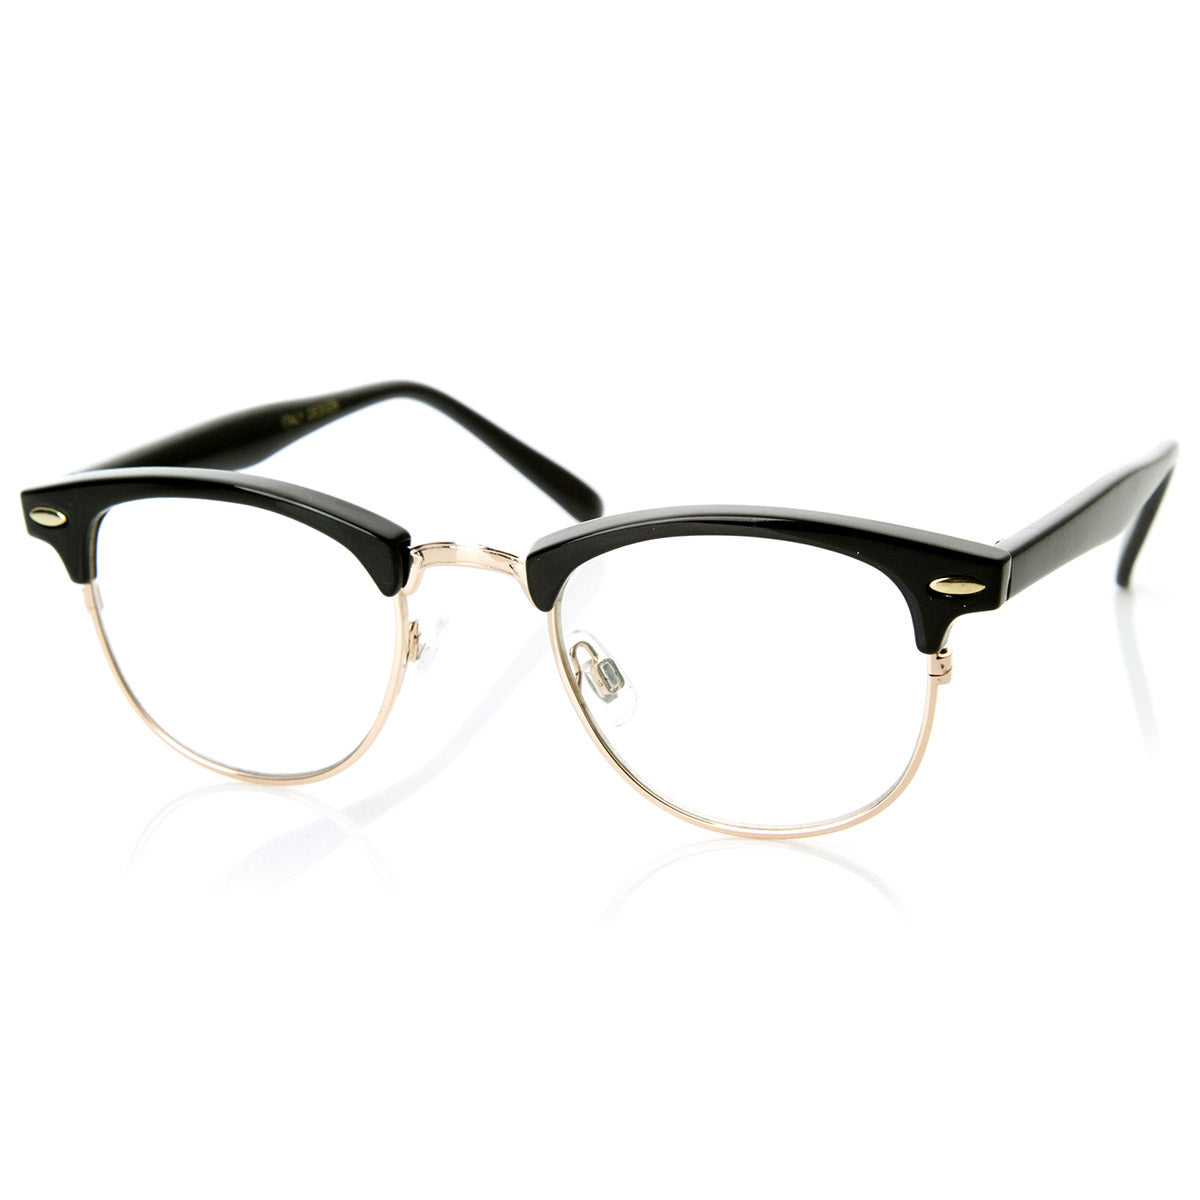 gold rimmed glasses frames